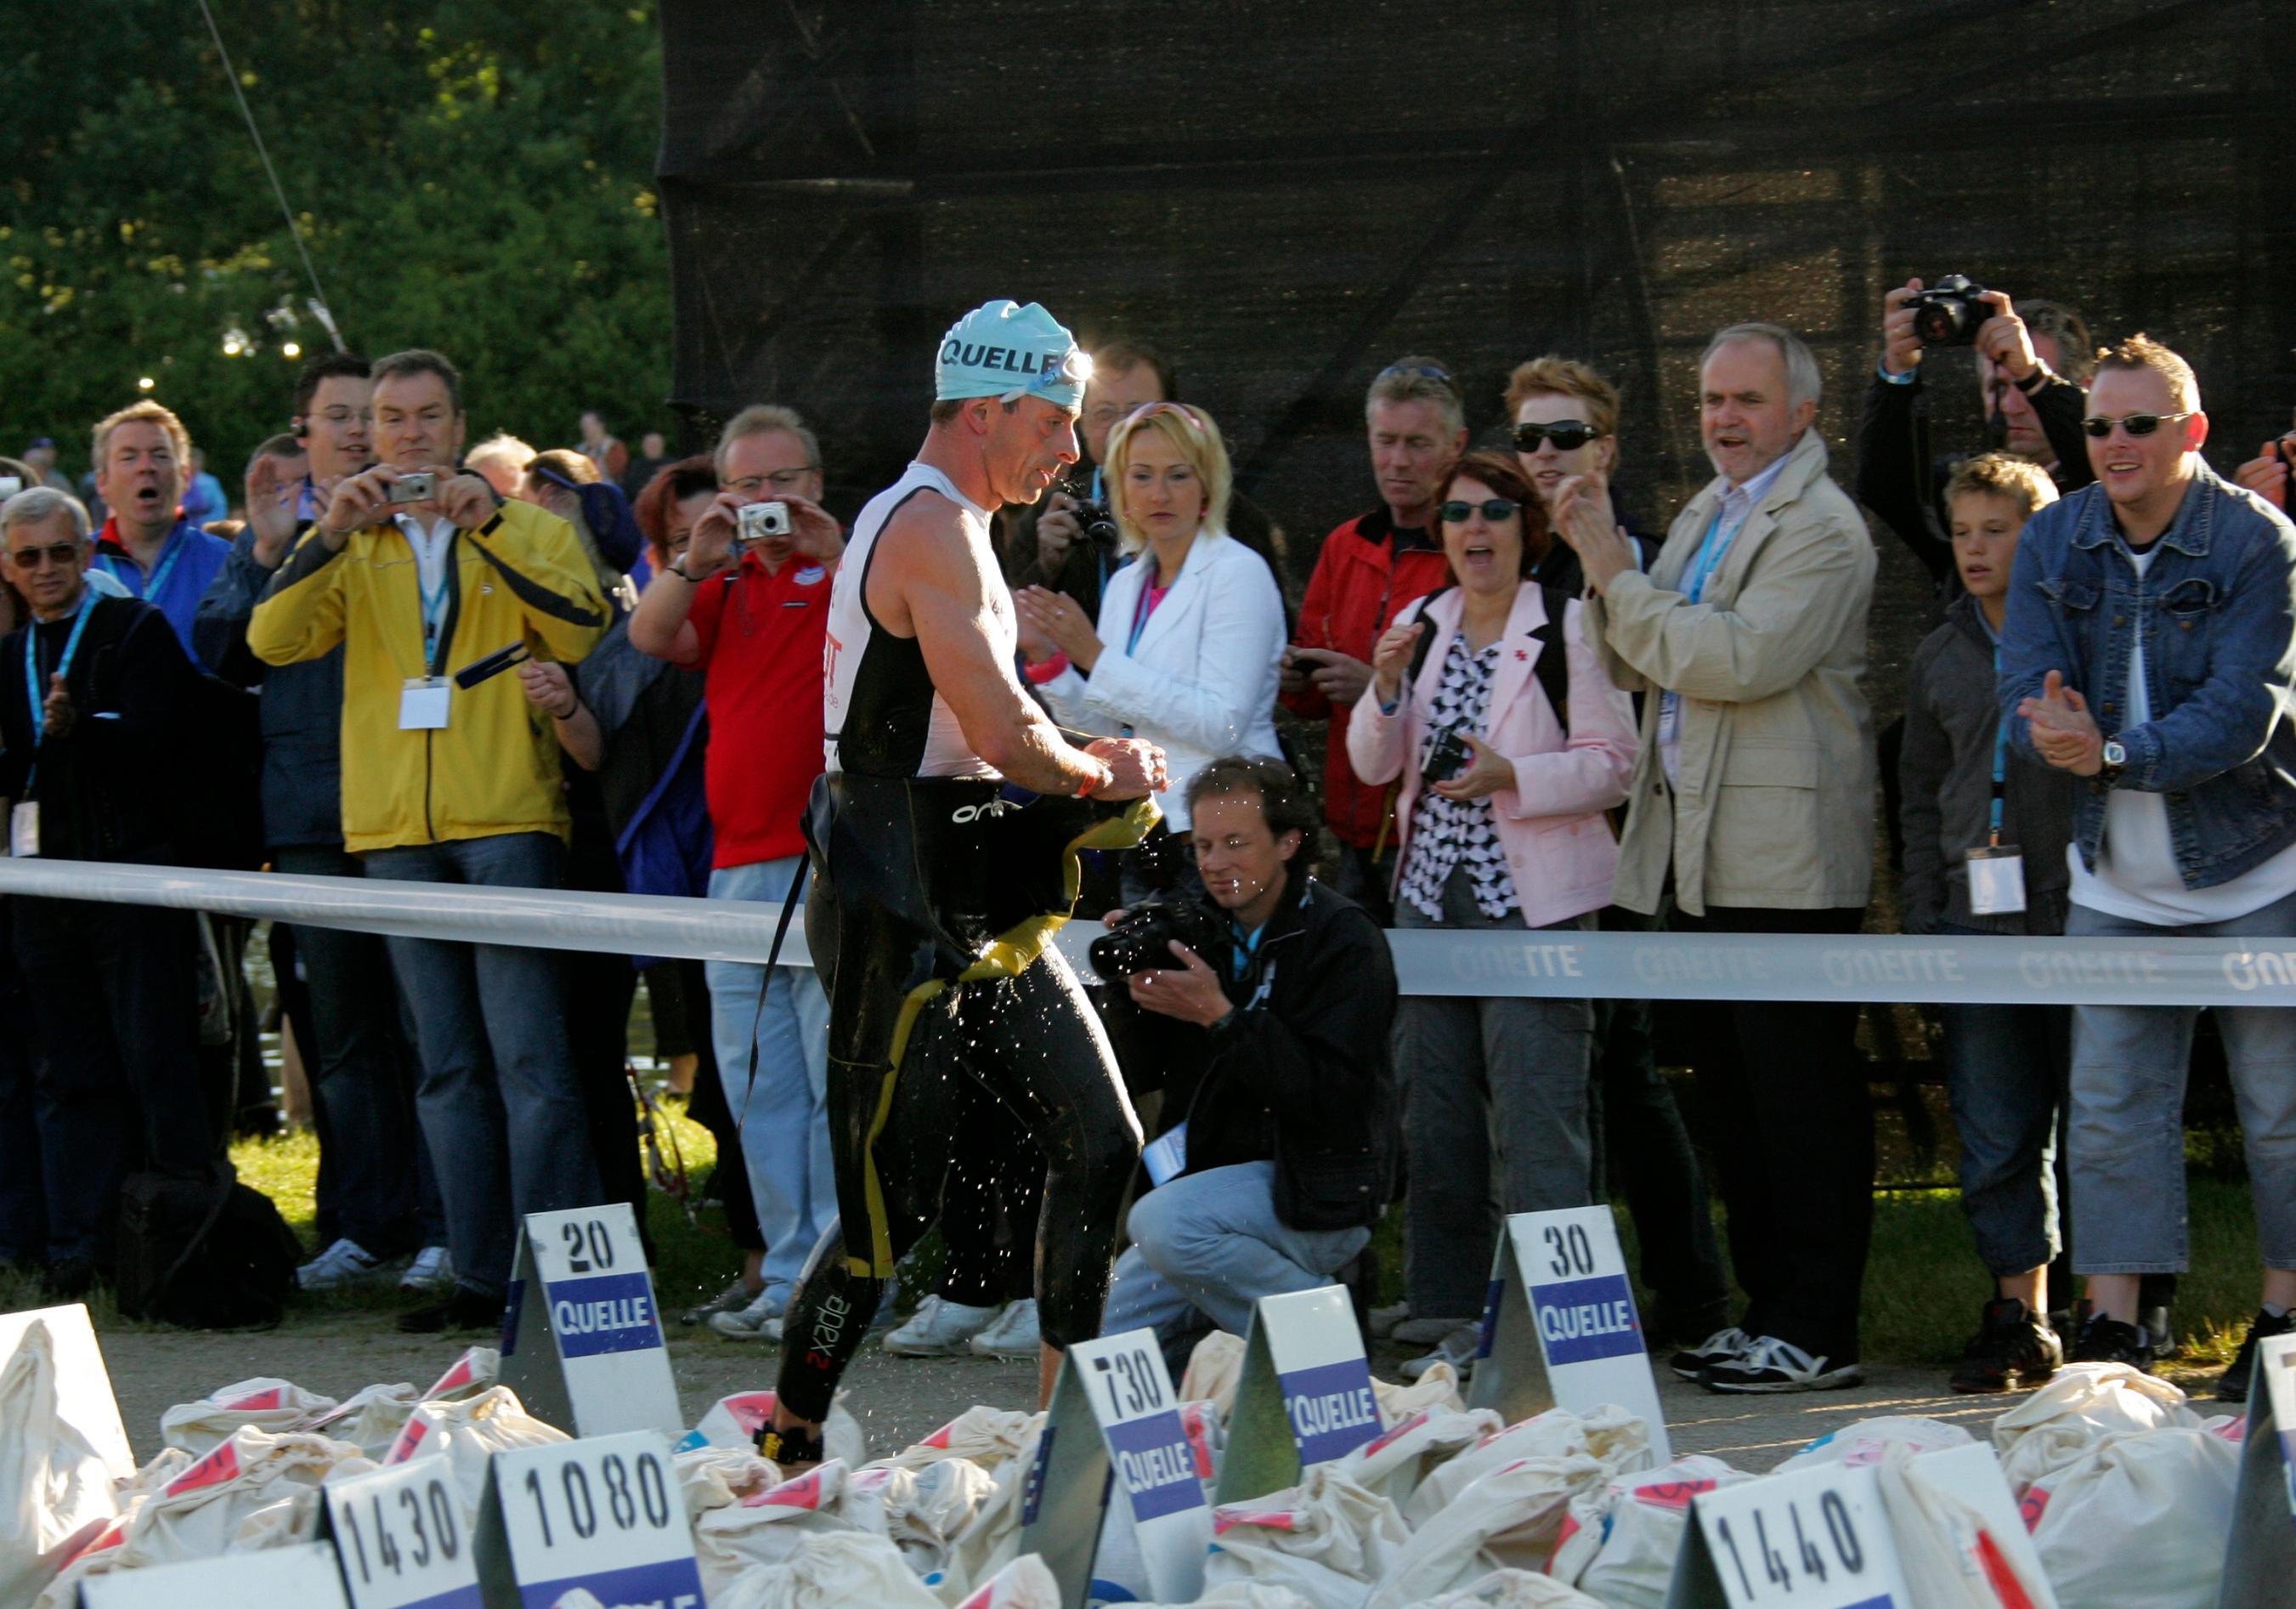 Andreas Niedrig Vom Junkie zum Ironman